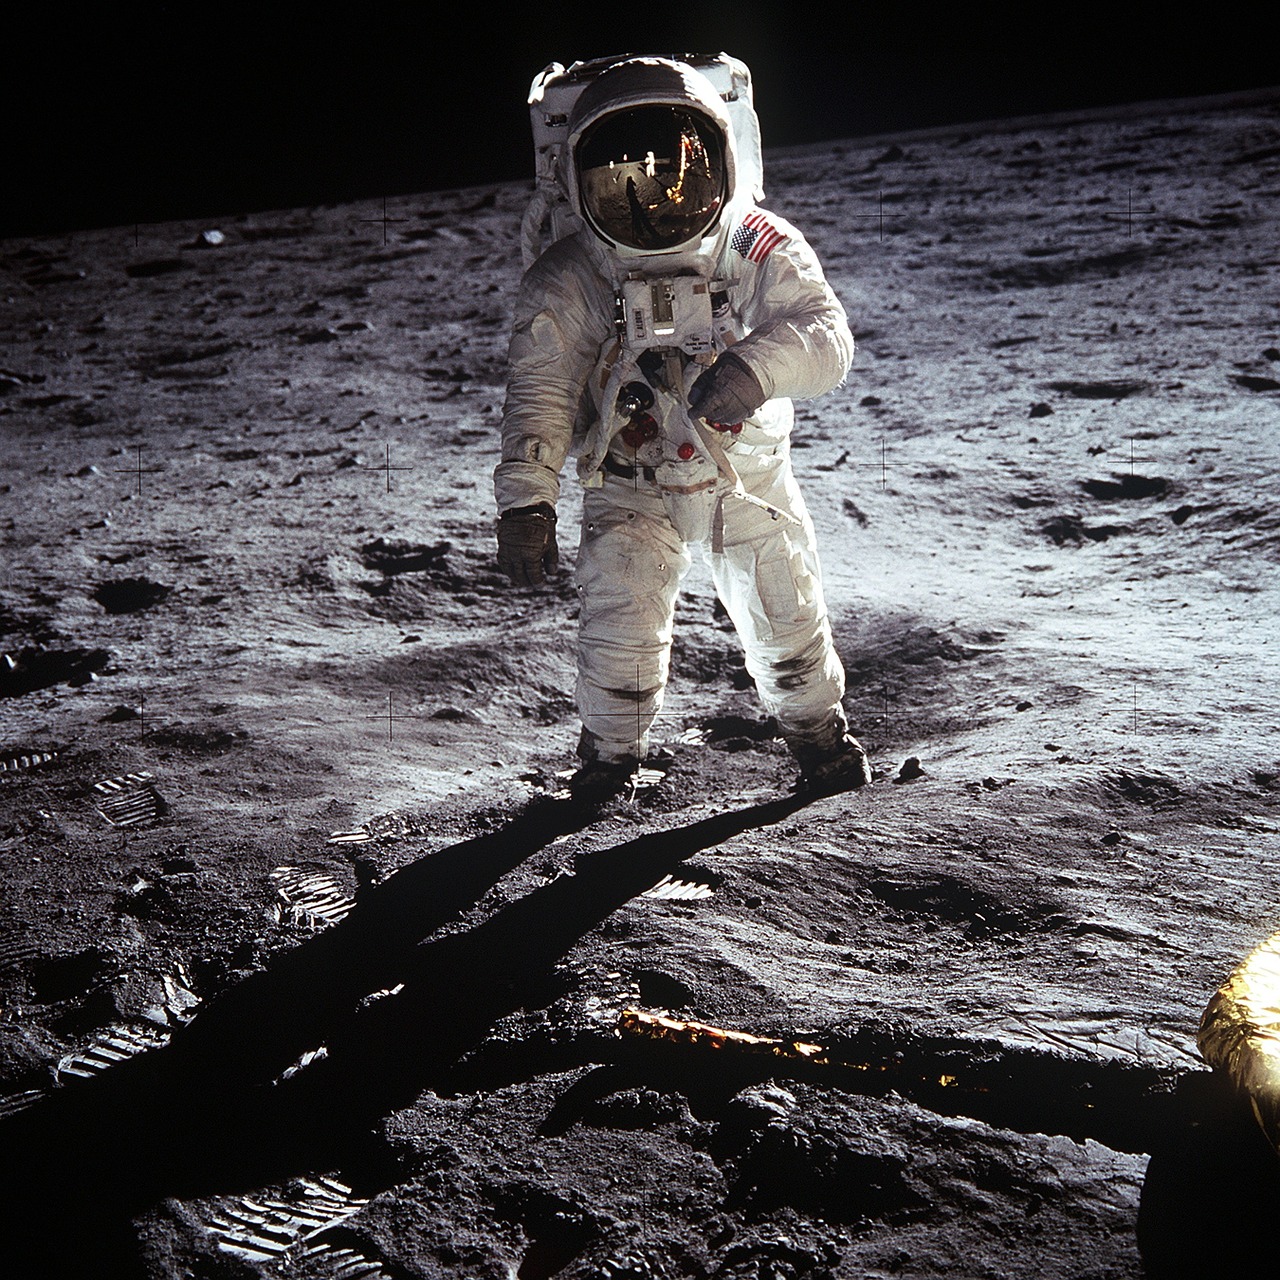 2019年は人類月面着陸から50周年。アポロ11号司令船「コロンビア」を 